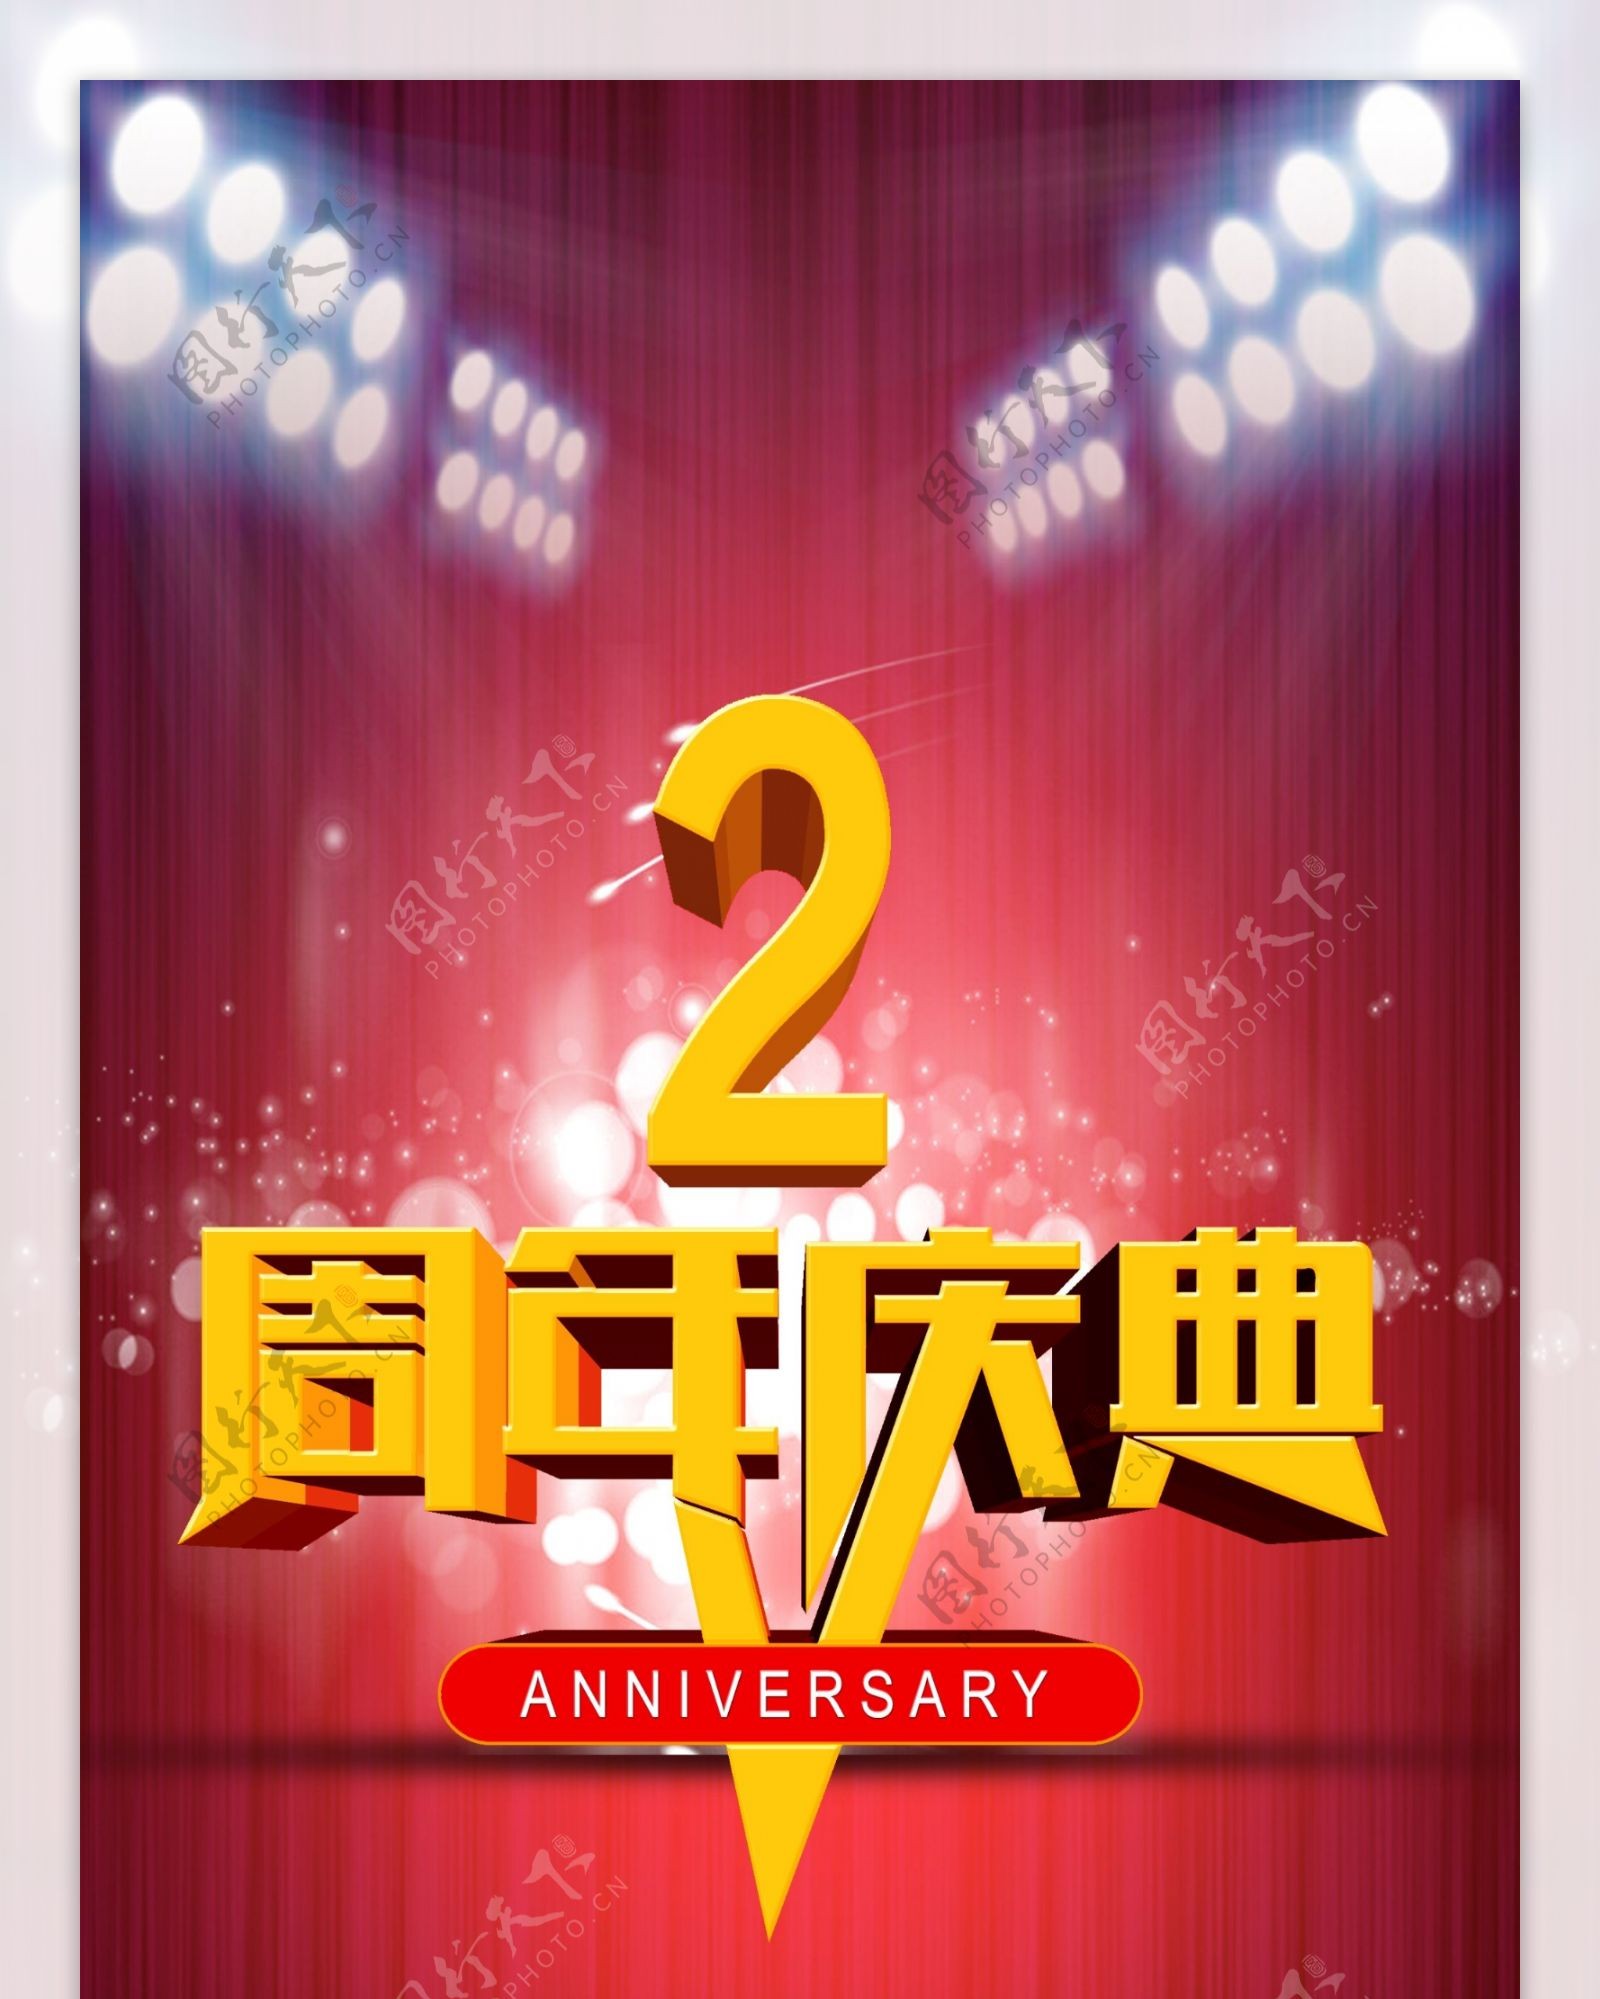 2周年庆吊旗宣传海报设计PSD素材